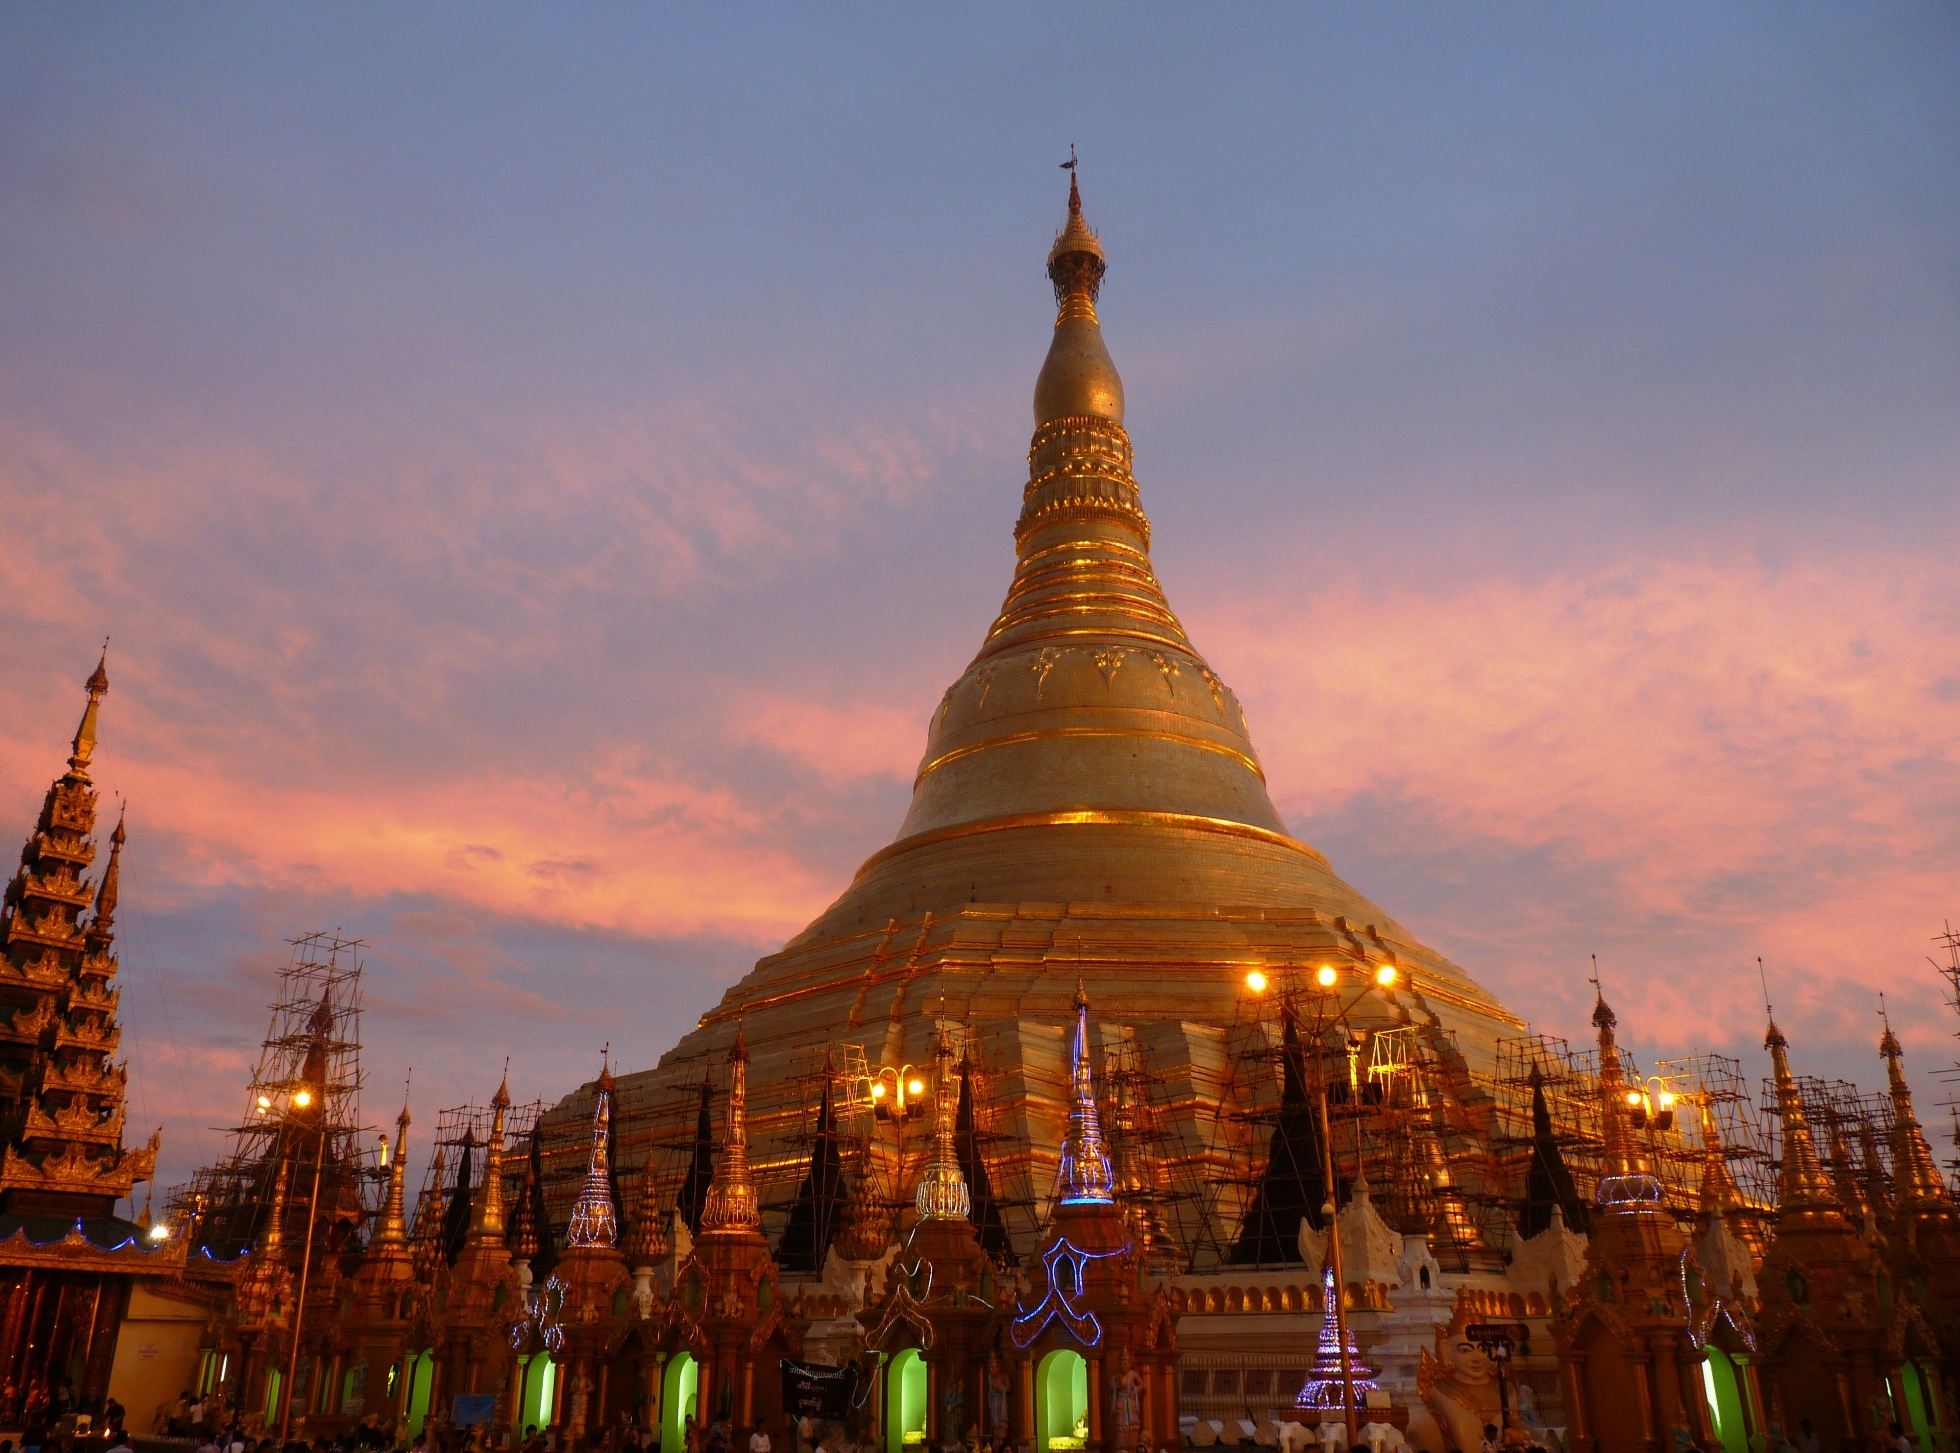 пагода шведагон мьянма